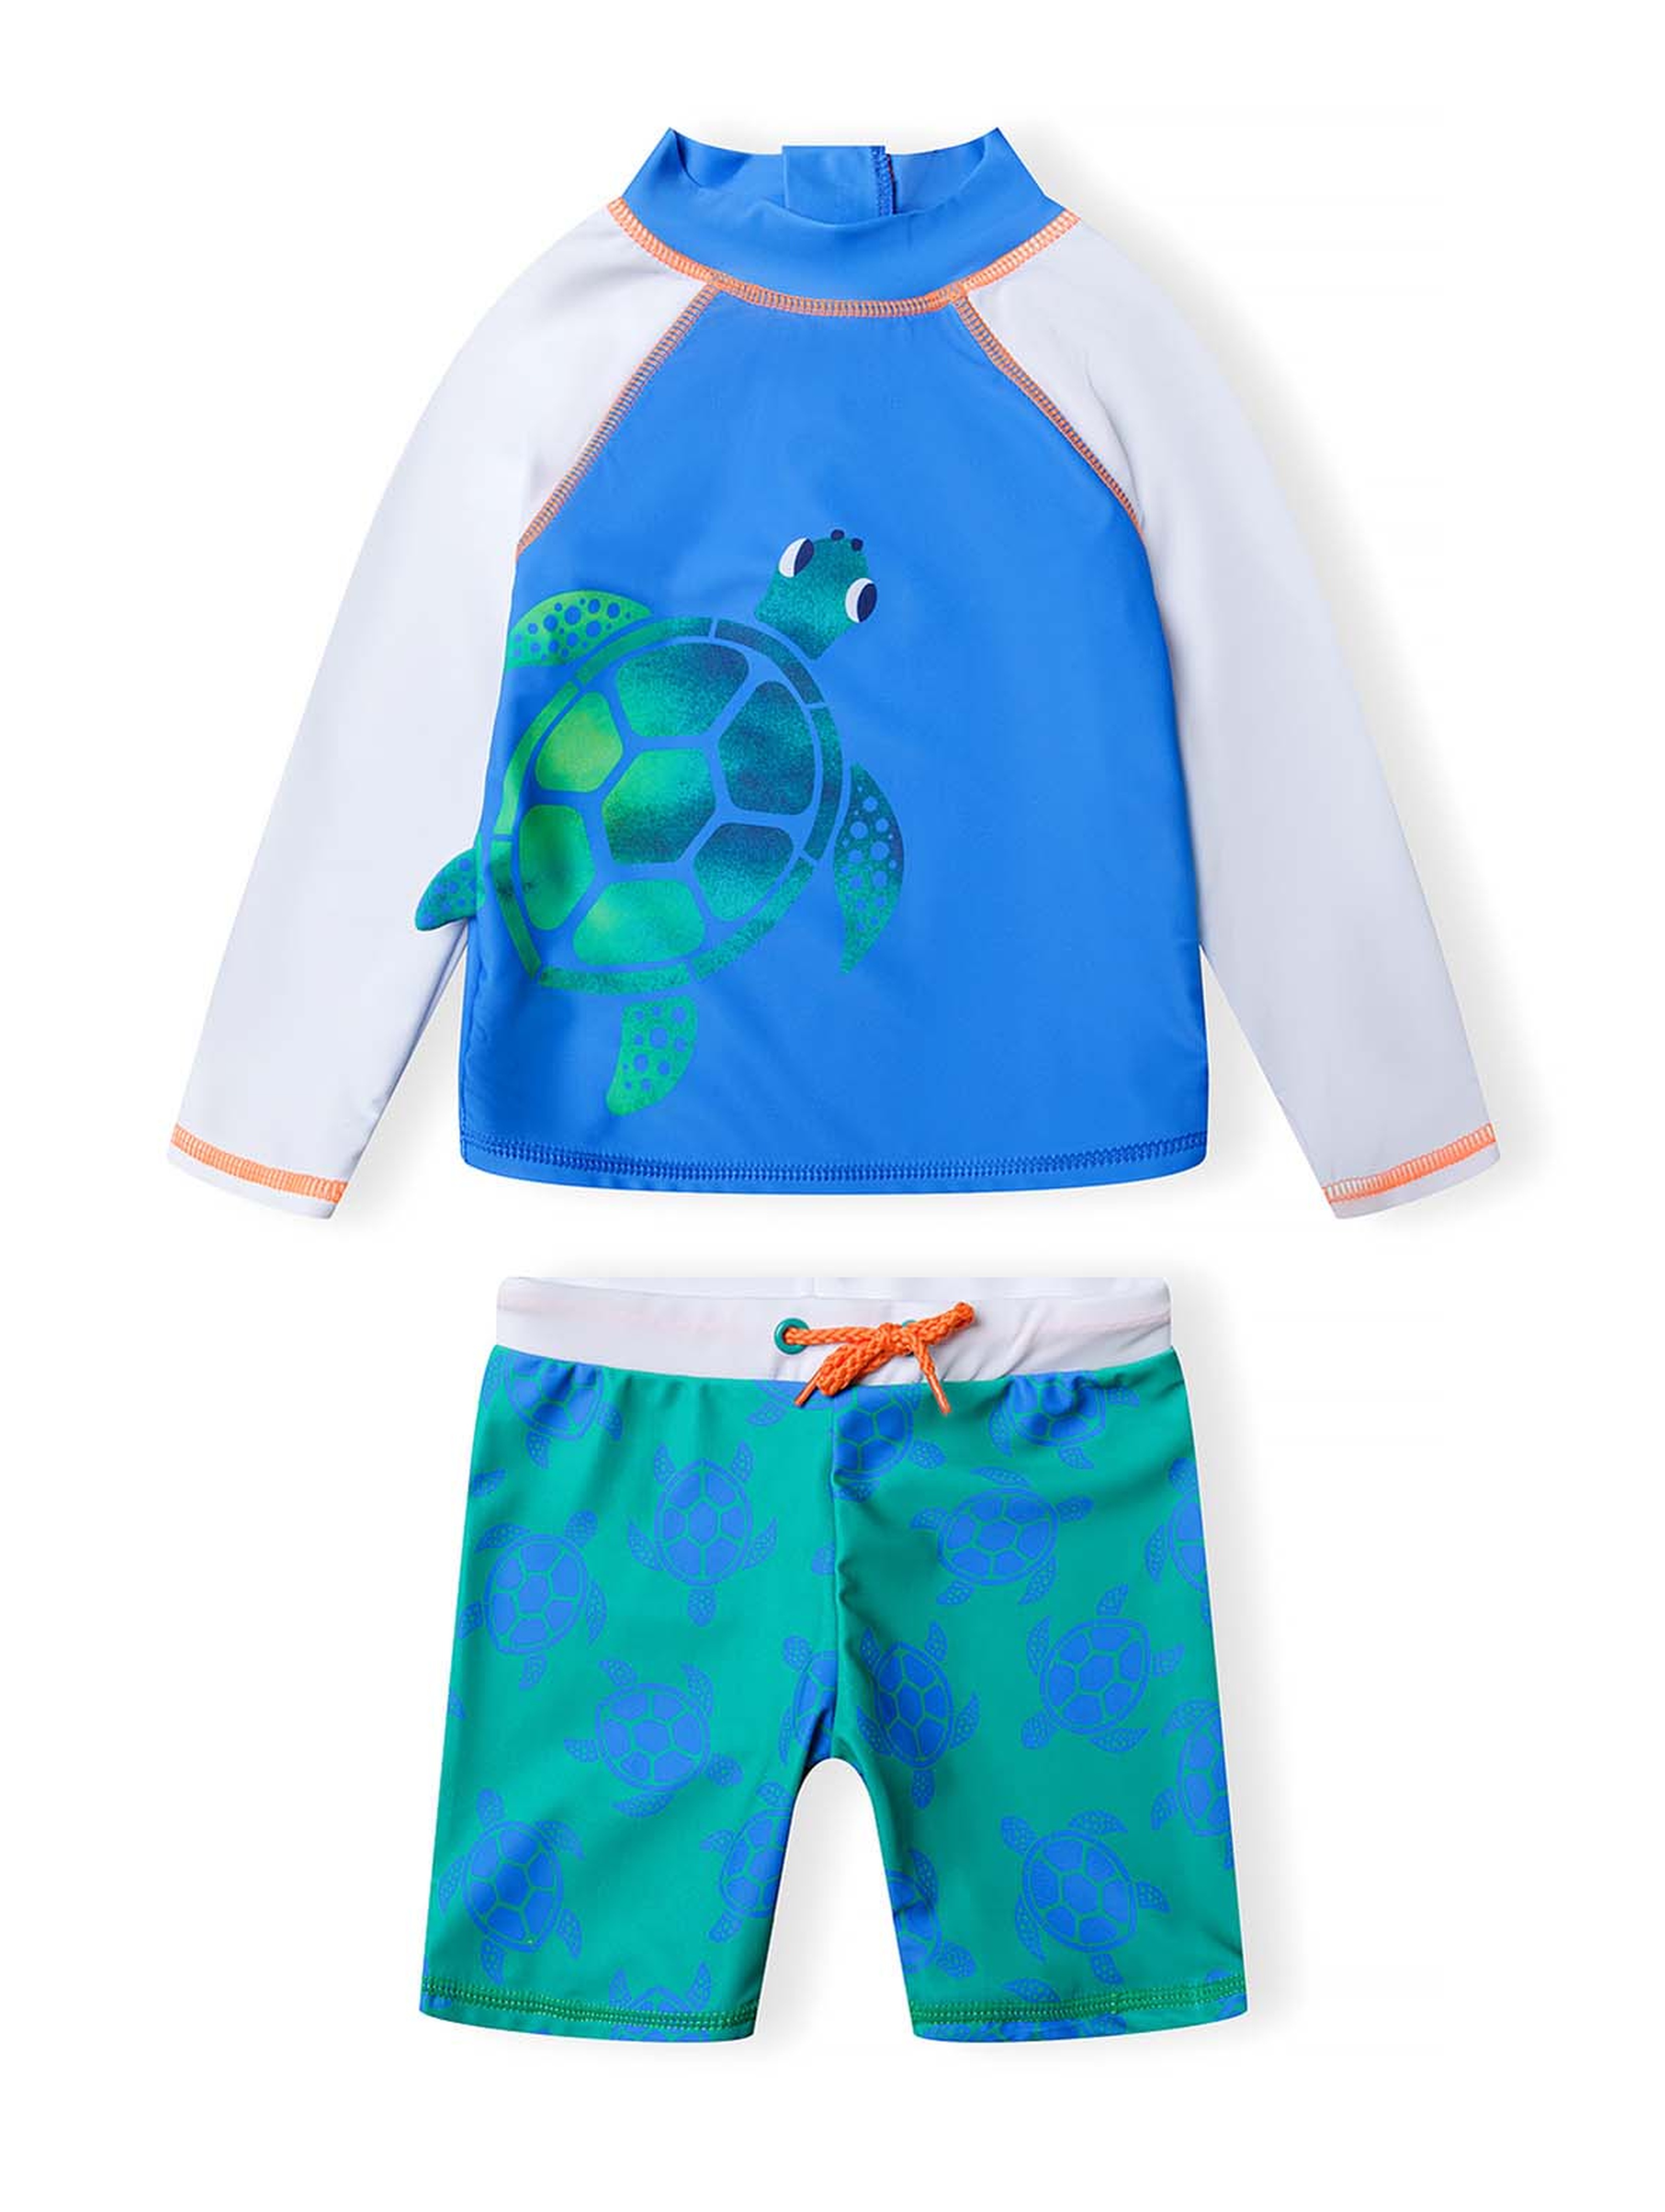 Strój kąpielowy z filtrem UV - koszulka z żółwiem i kąpielówki